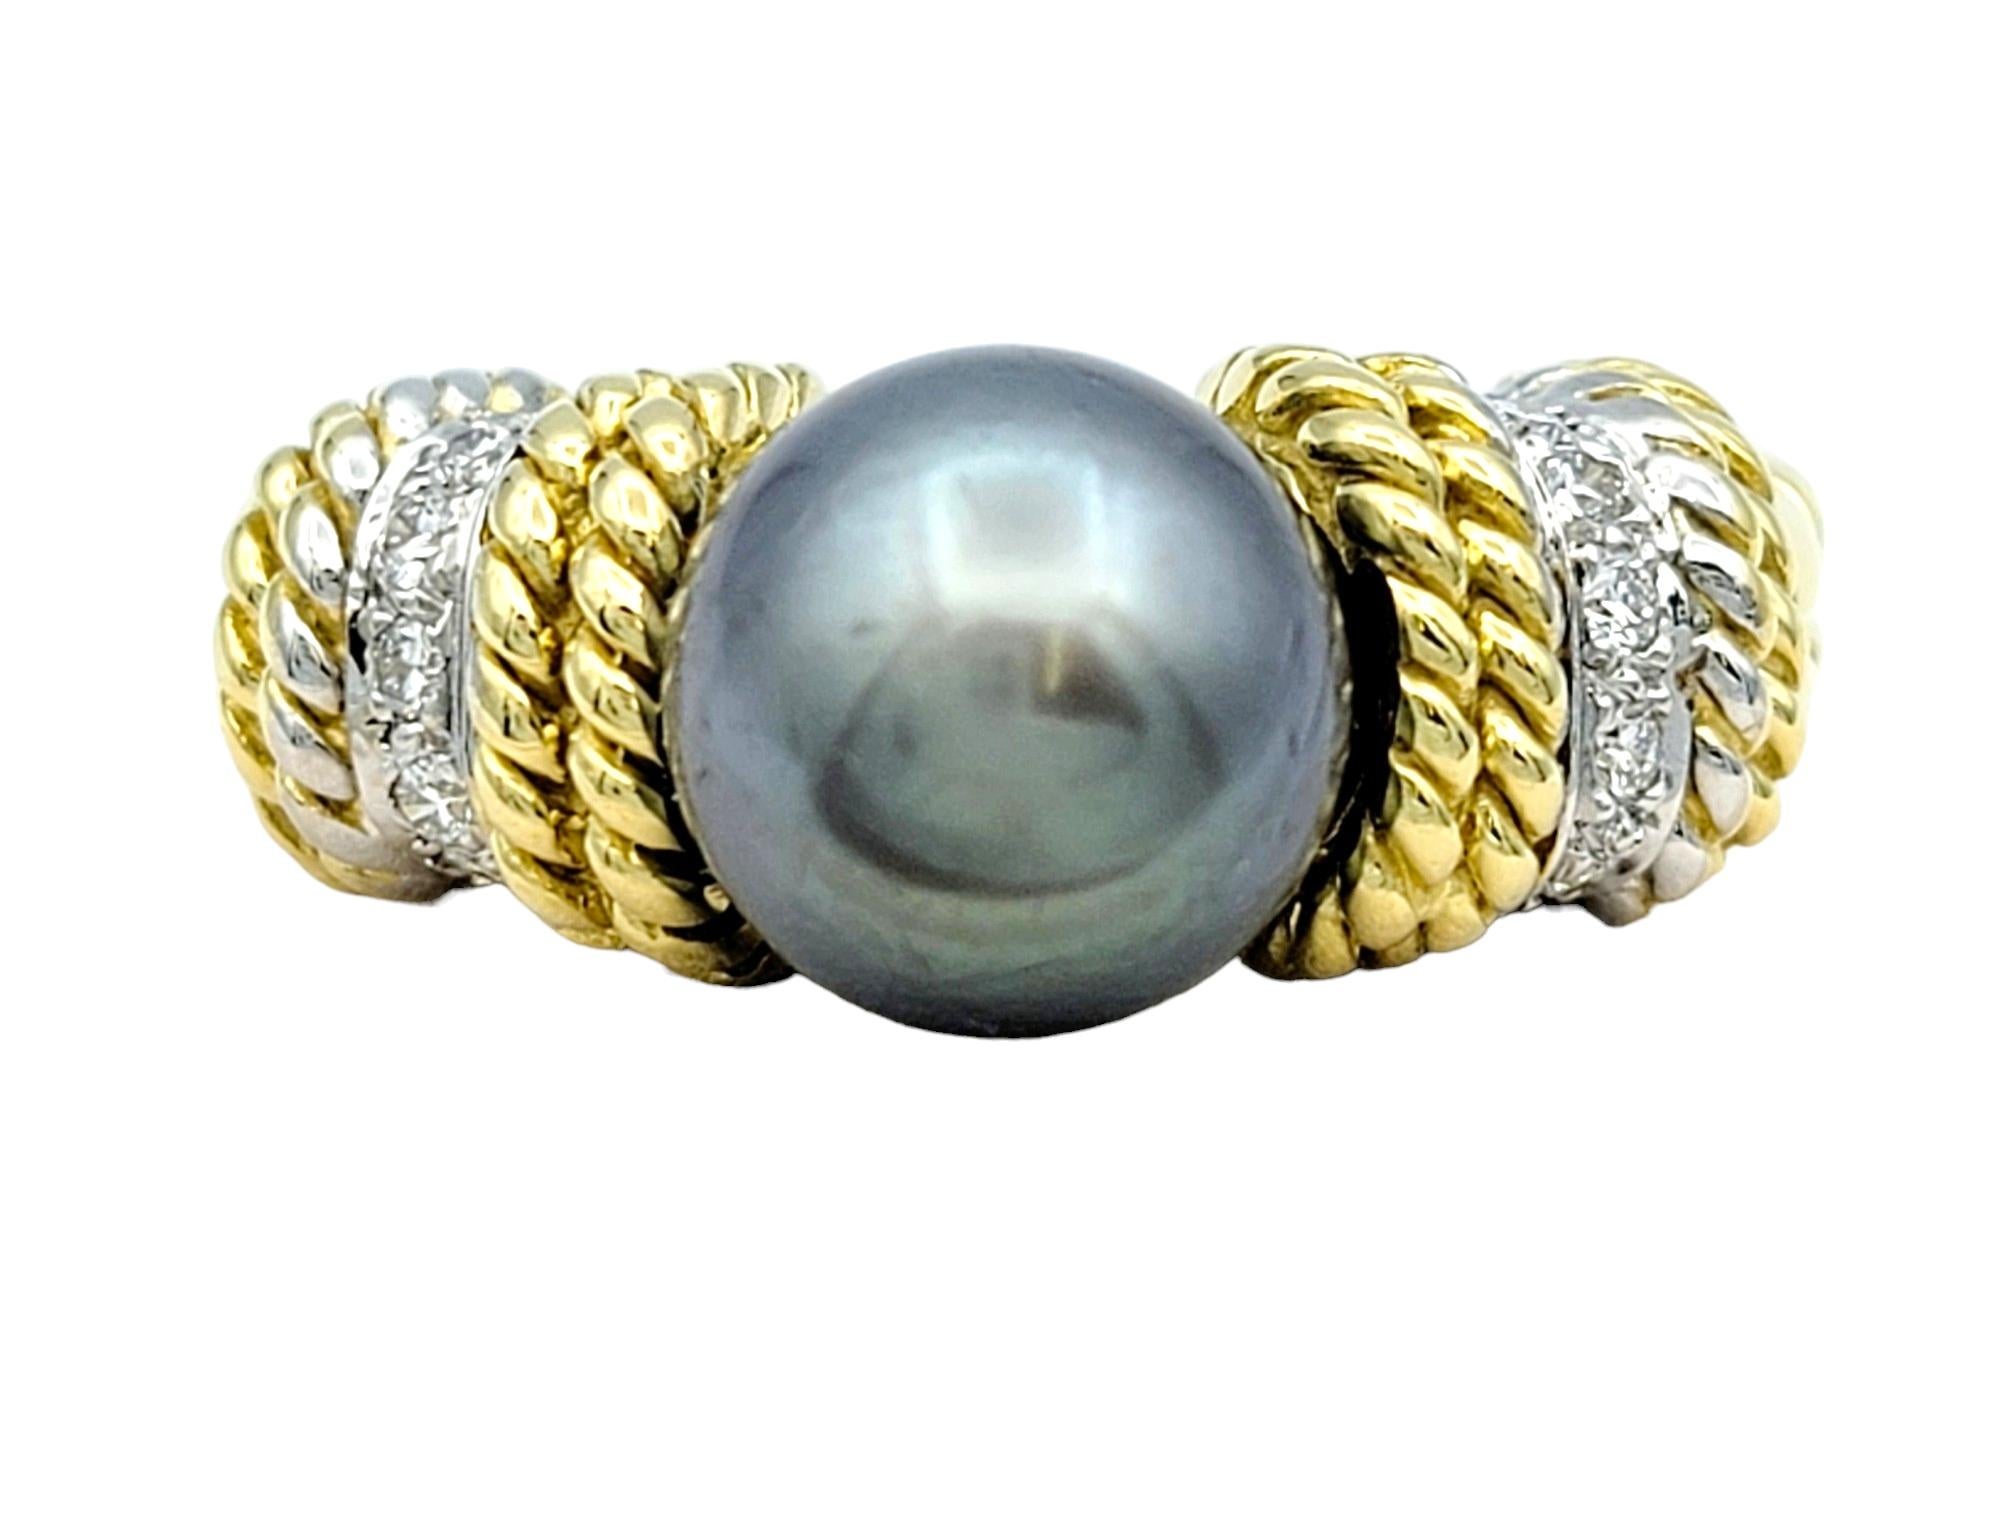 Taille de l'anneau : 7

La bague Cassis en perles de Tahiti respire la sophistication et l'élégance grâce à son design intemporel et à sa fabrication exquise. Réalisée en or jaune luxueux, la bande de la bague présente des détails striés complexes